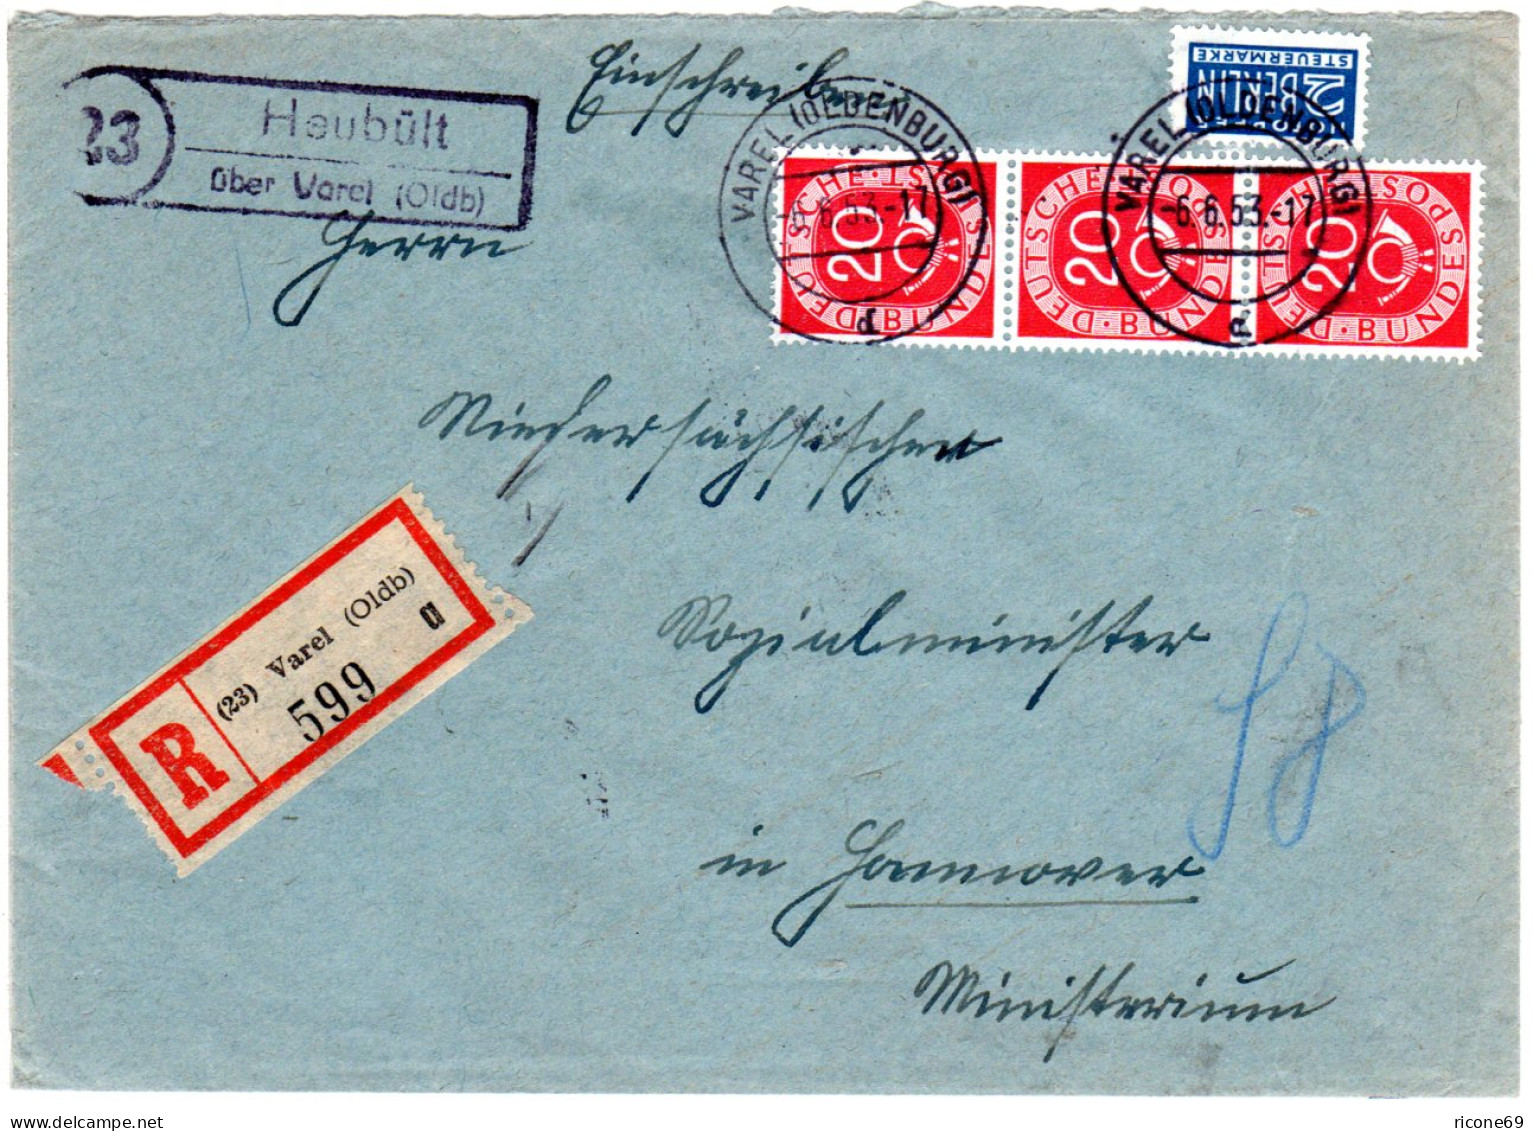 BRD 1953, Landpost Stpl. 23 HEUBÜLT über Varel Auf Einschreiben Brief M. 3x20 Pf - Briefe U. Dokumente